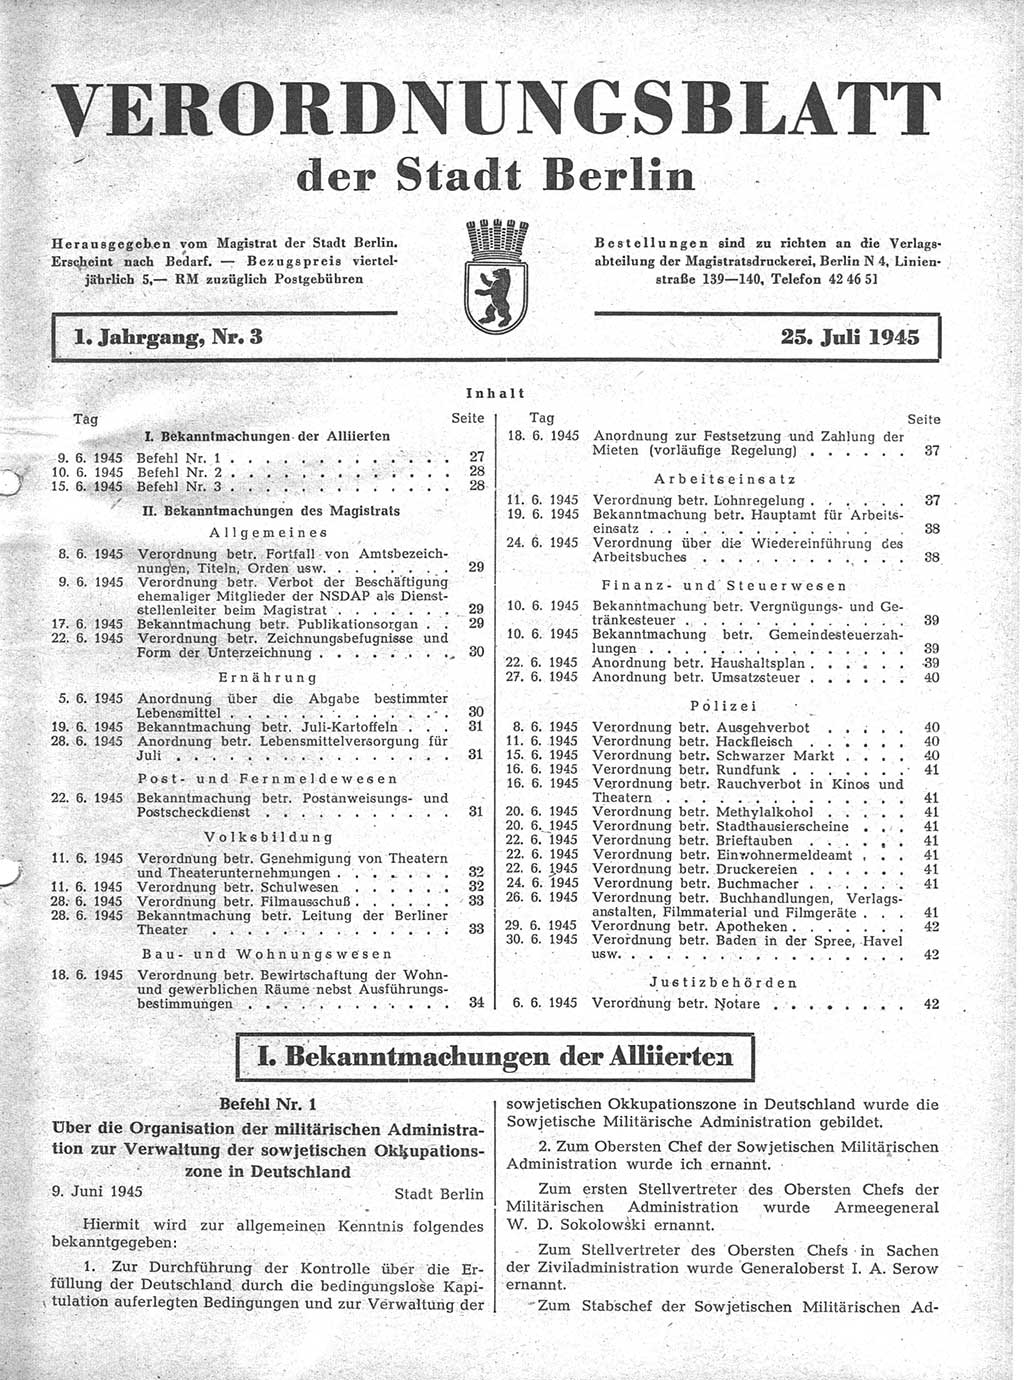 Verordnungsblatt (VOBl.) der Stadt Berlin 1945, Seite 27 (VOBl. Bln. 1945, S. 27)